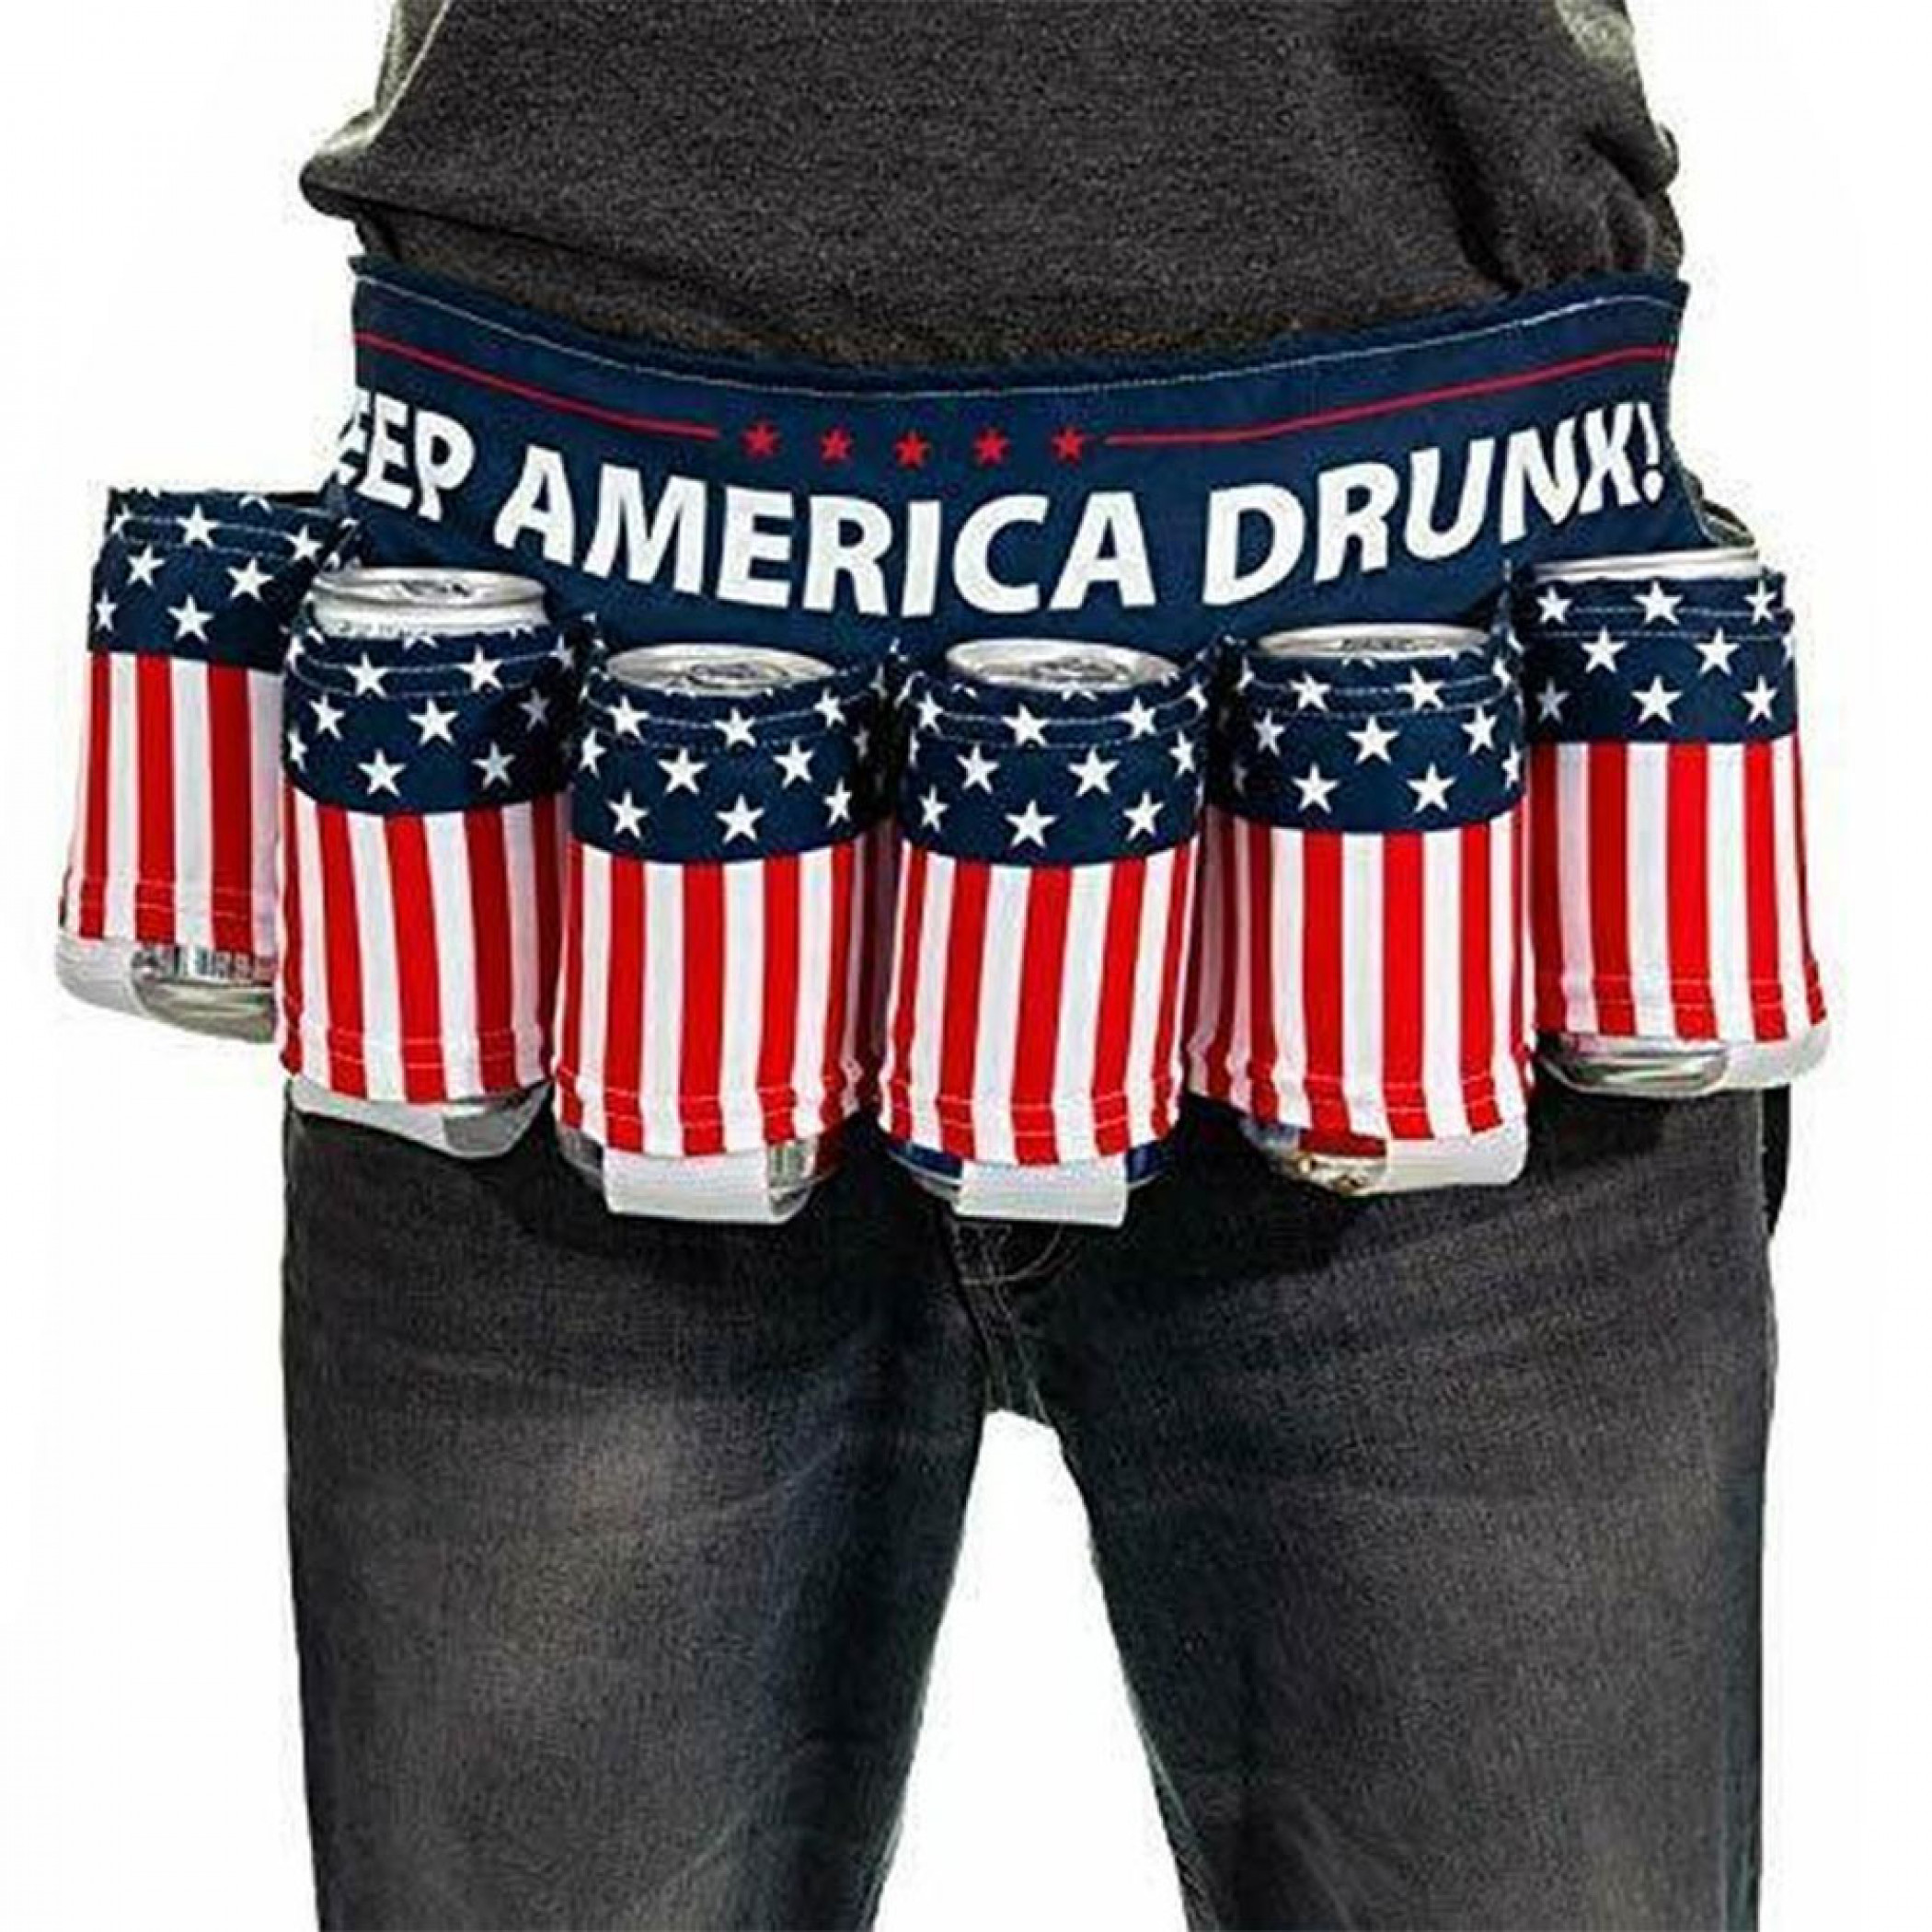 American Flag Keep America Drunk USA Beer Belt